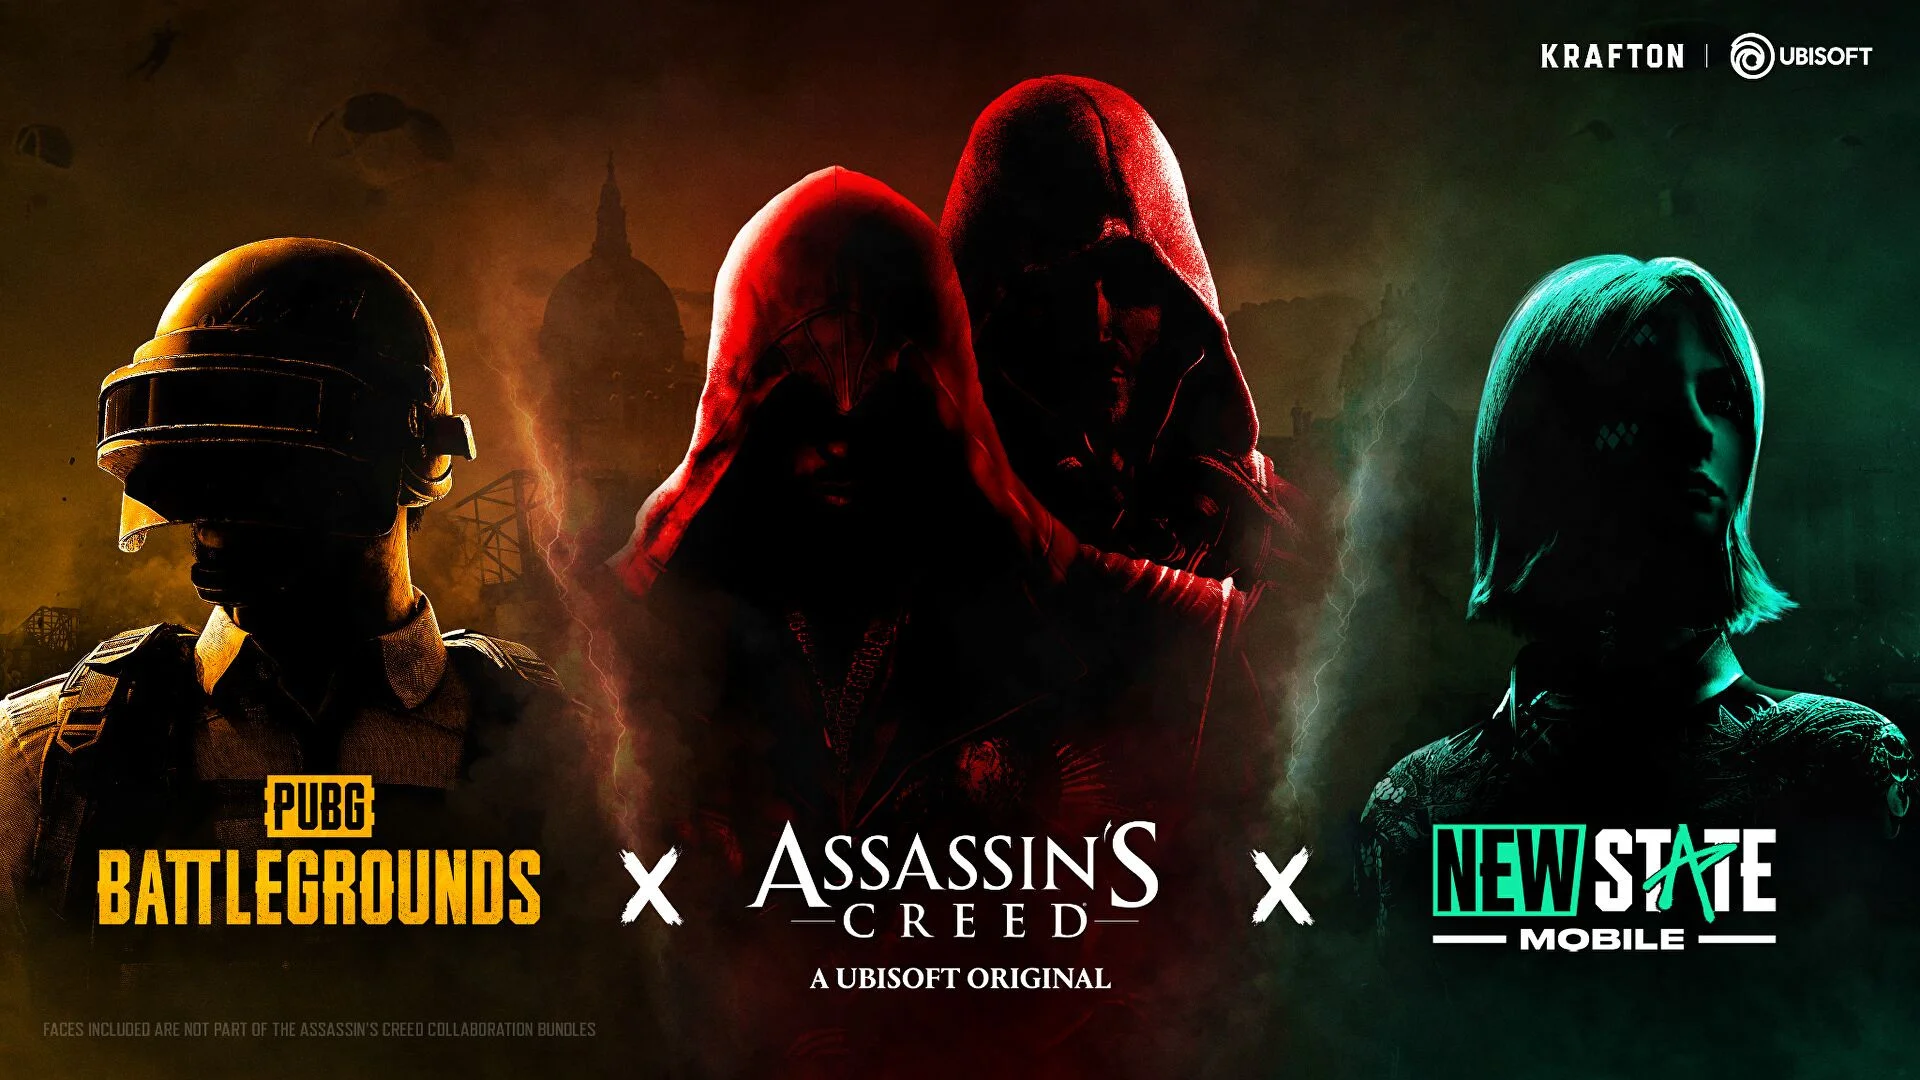 PUBG: Battlegrounds ждёт кроссовер с Assassin’s Creed с косметикой и событиями - фото 1